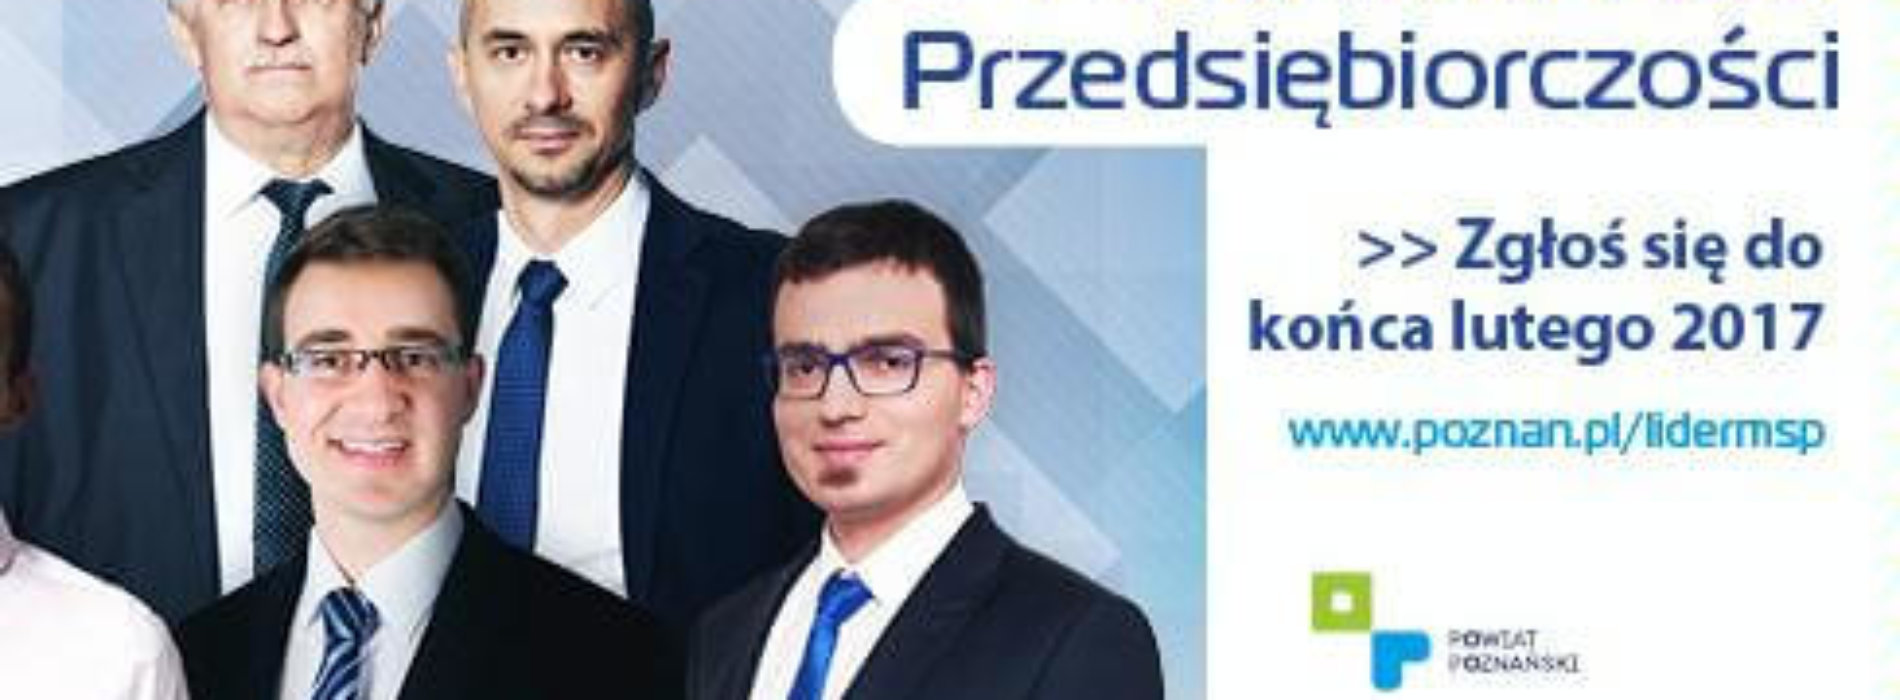 Poznański Lider Przedsiębiorczości – weź udział w Konkursie